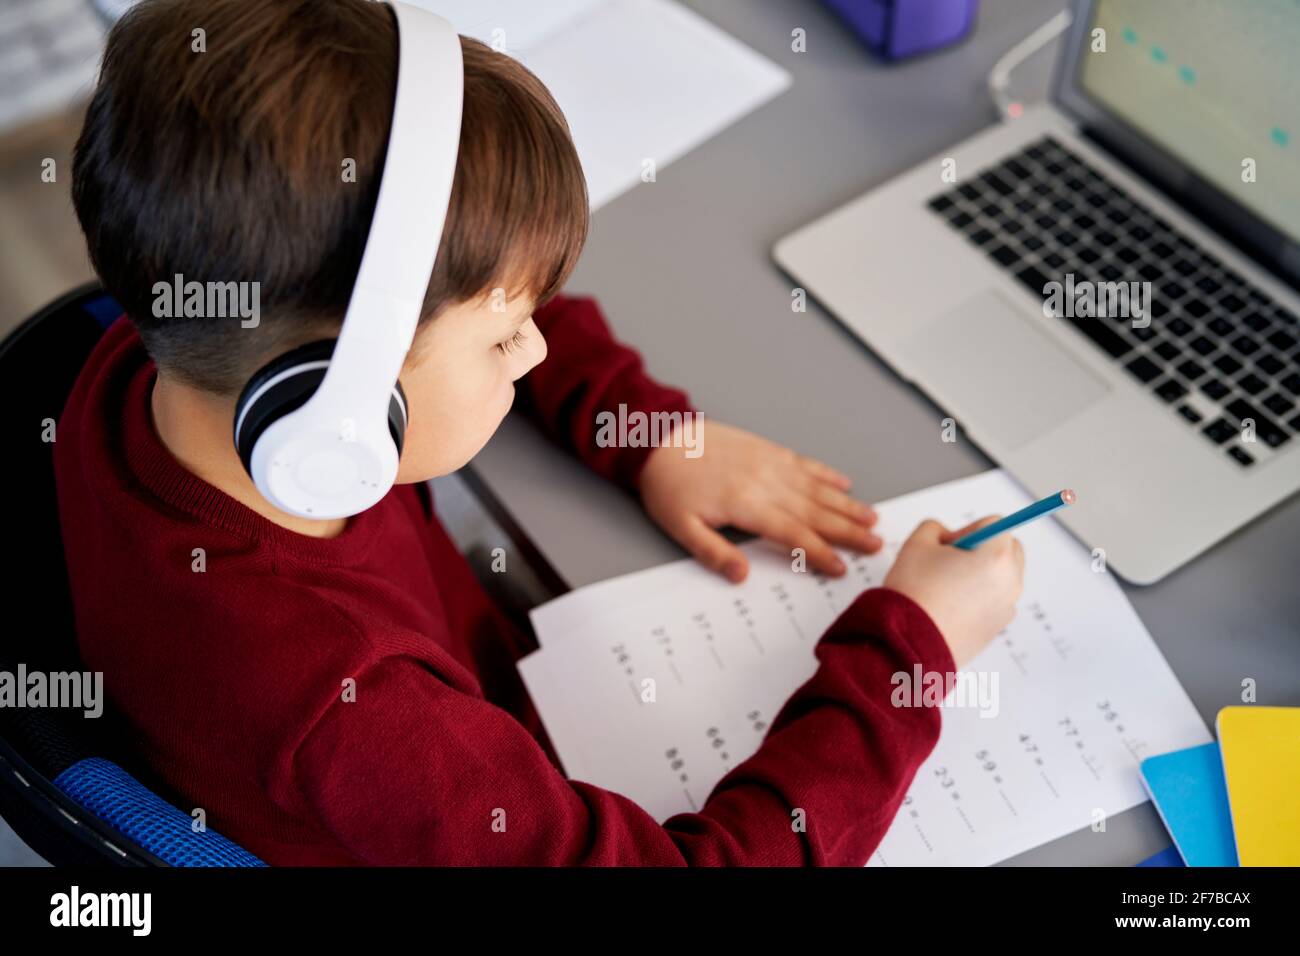 Vue de dessus d'un garçon qui fait ses devoirs pendant l'apprentissage en ligne Banque D'Images